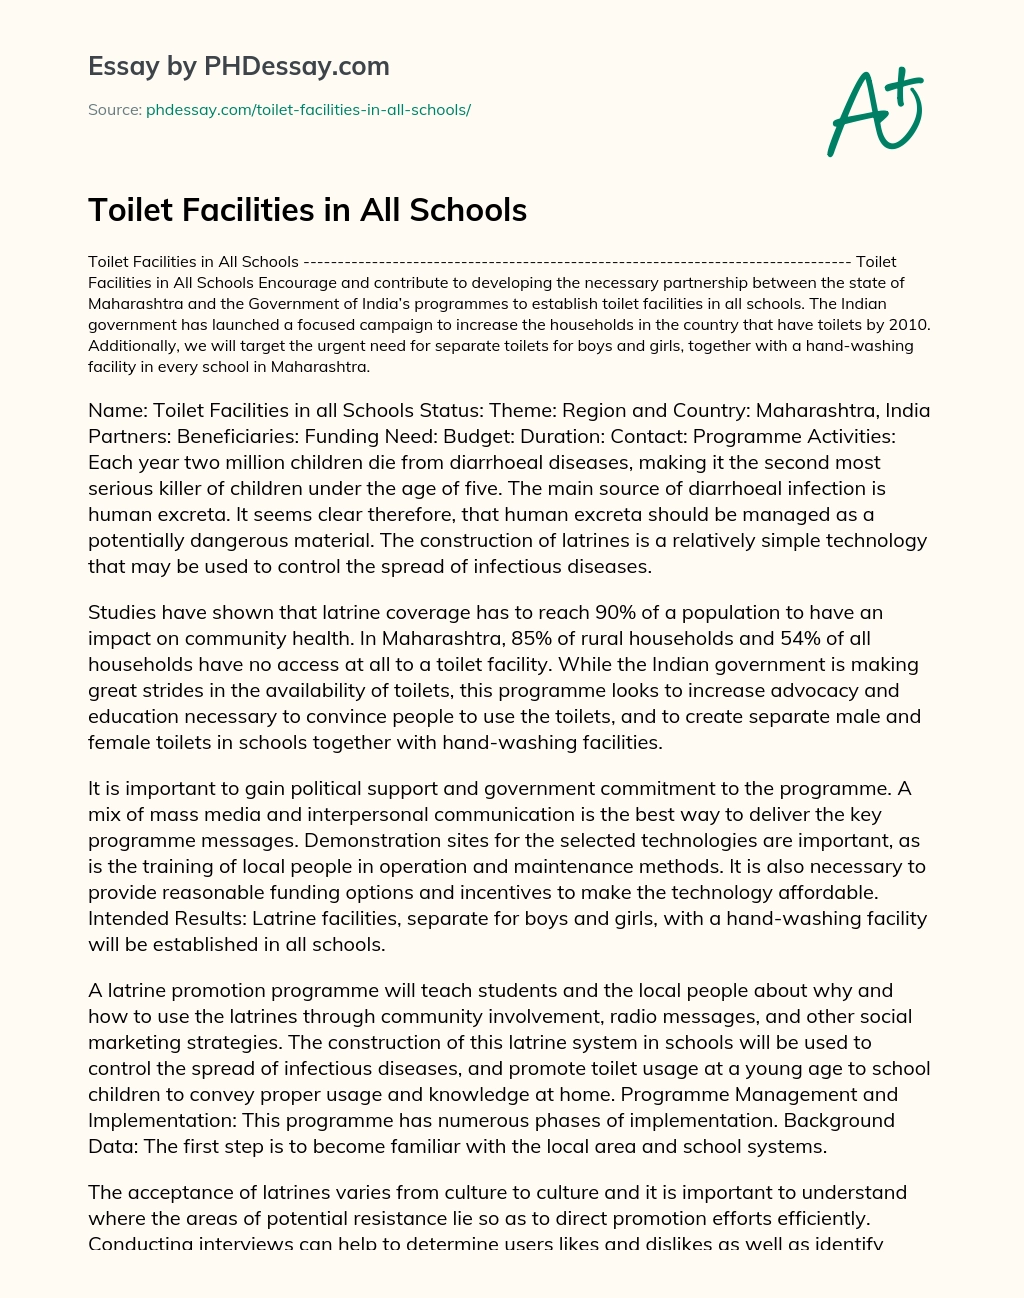 Toilet Facilities in All Schools essay